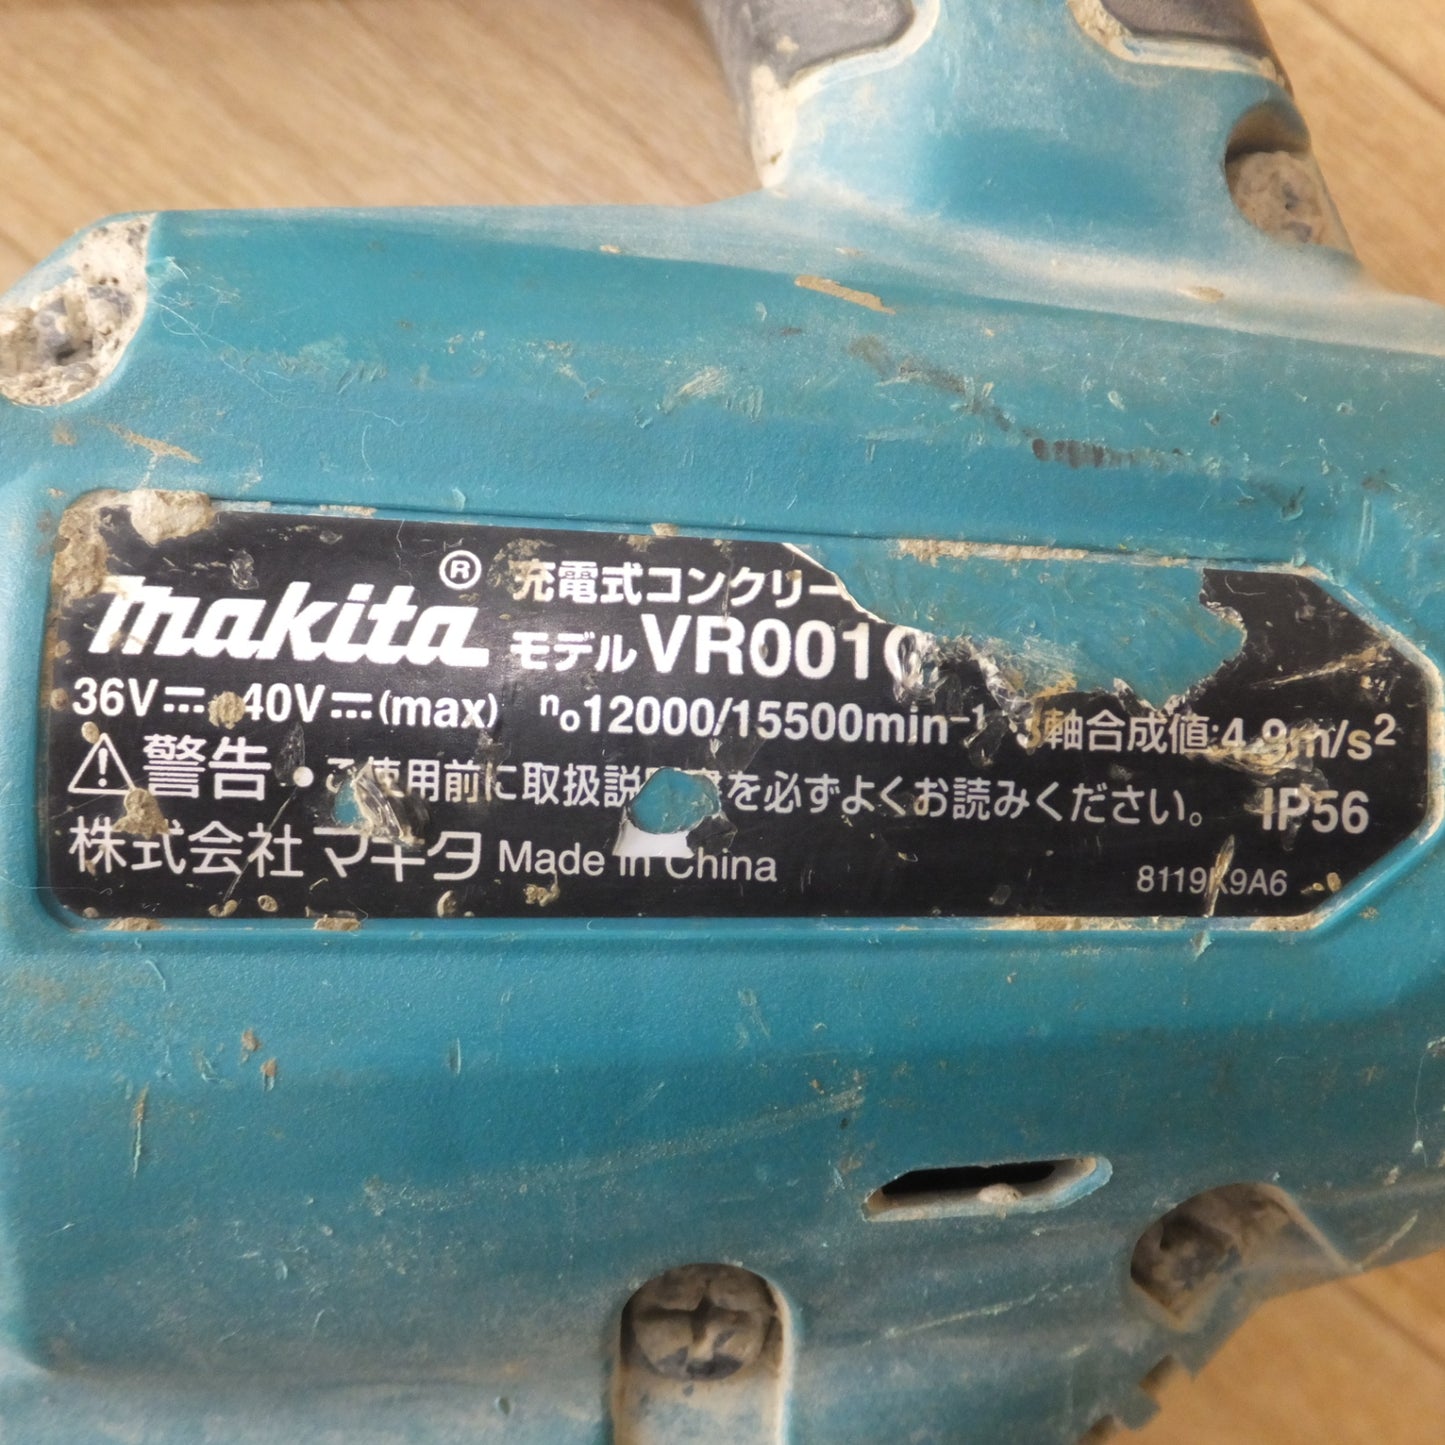 [送料無料] ★マキタ makita 充電式コンクリートバイブレータ VR001G 36V 40Vmax 本体のみ★